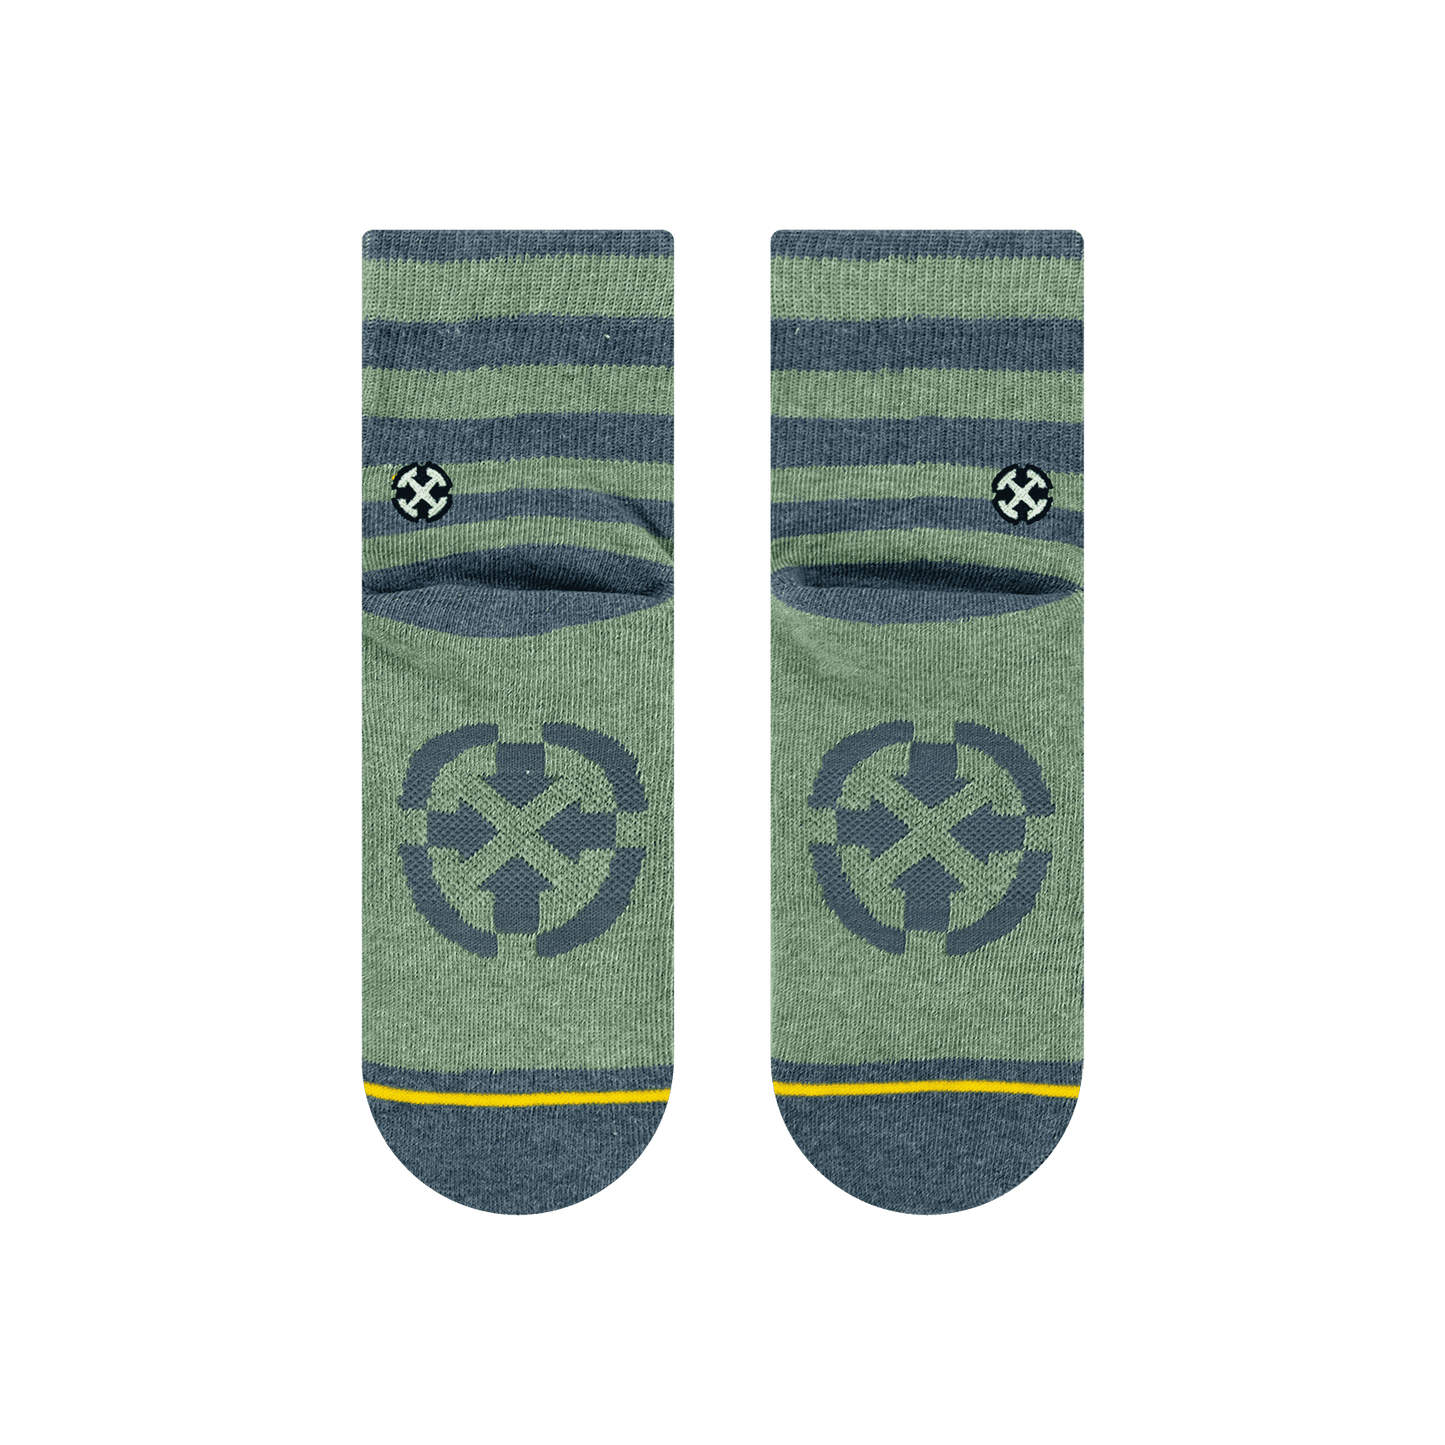 Pencil Stripe Quarter Crew Socks - Medium